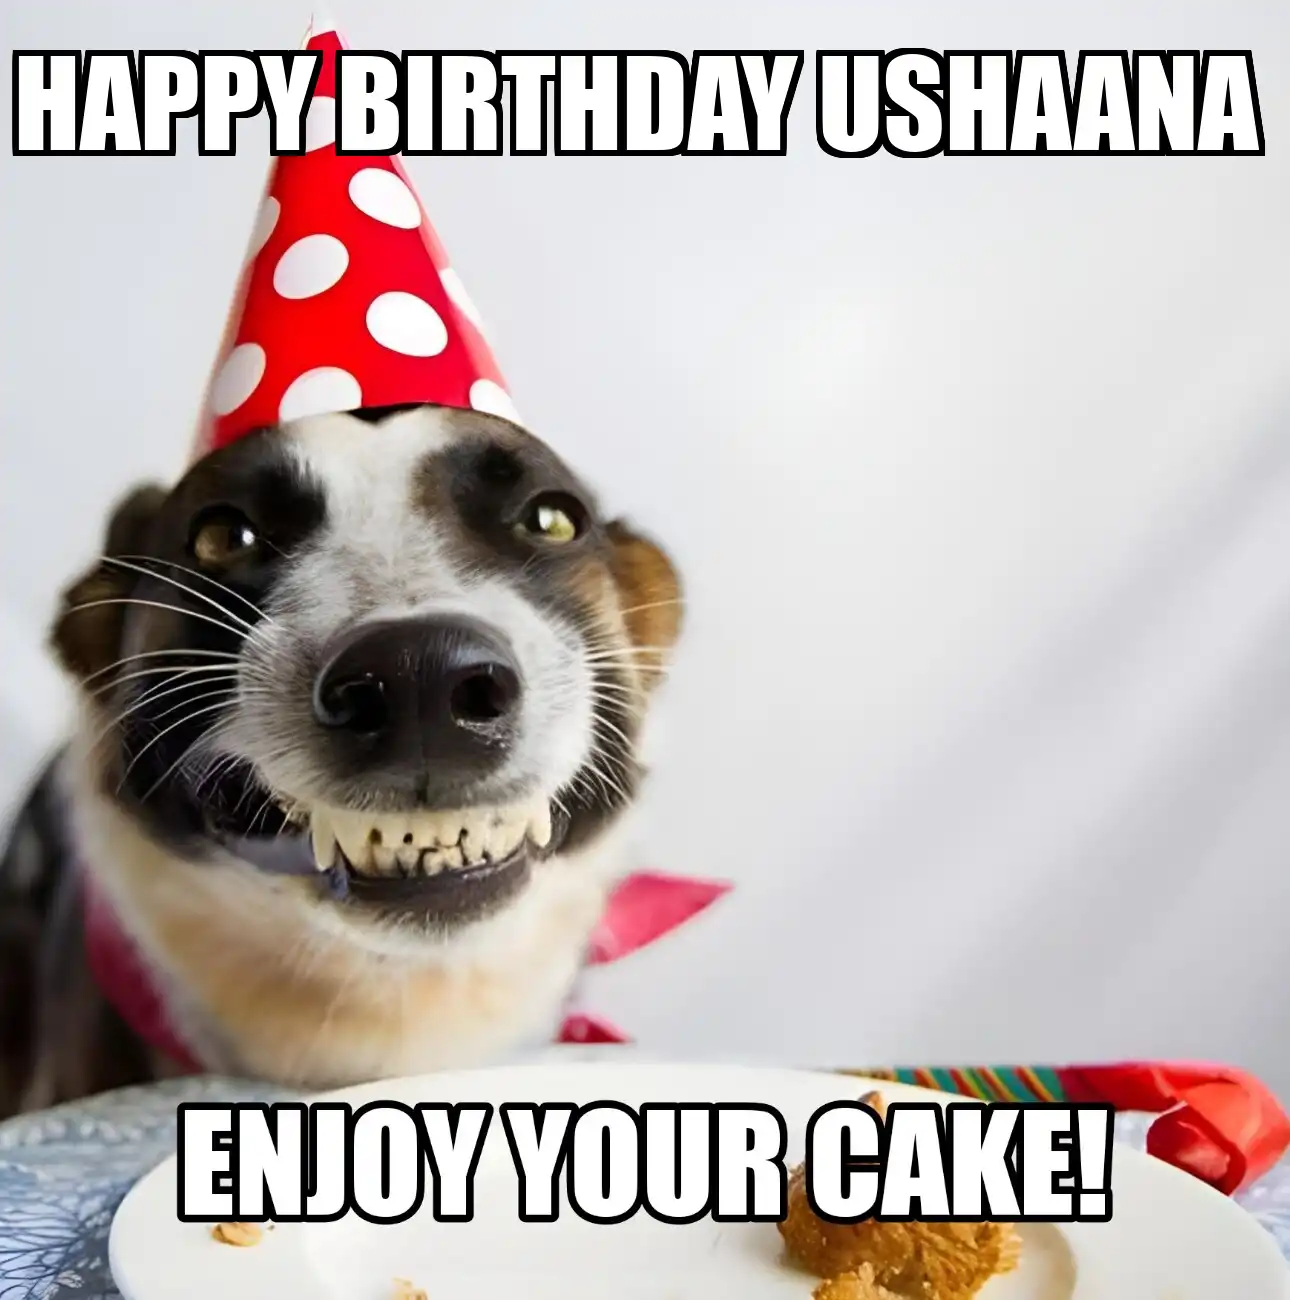 Happy Birthday Ushaana Enjoy Your Cake Dog Meme